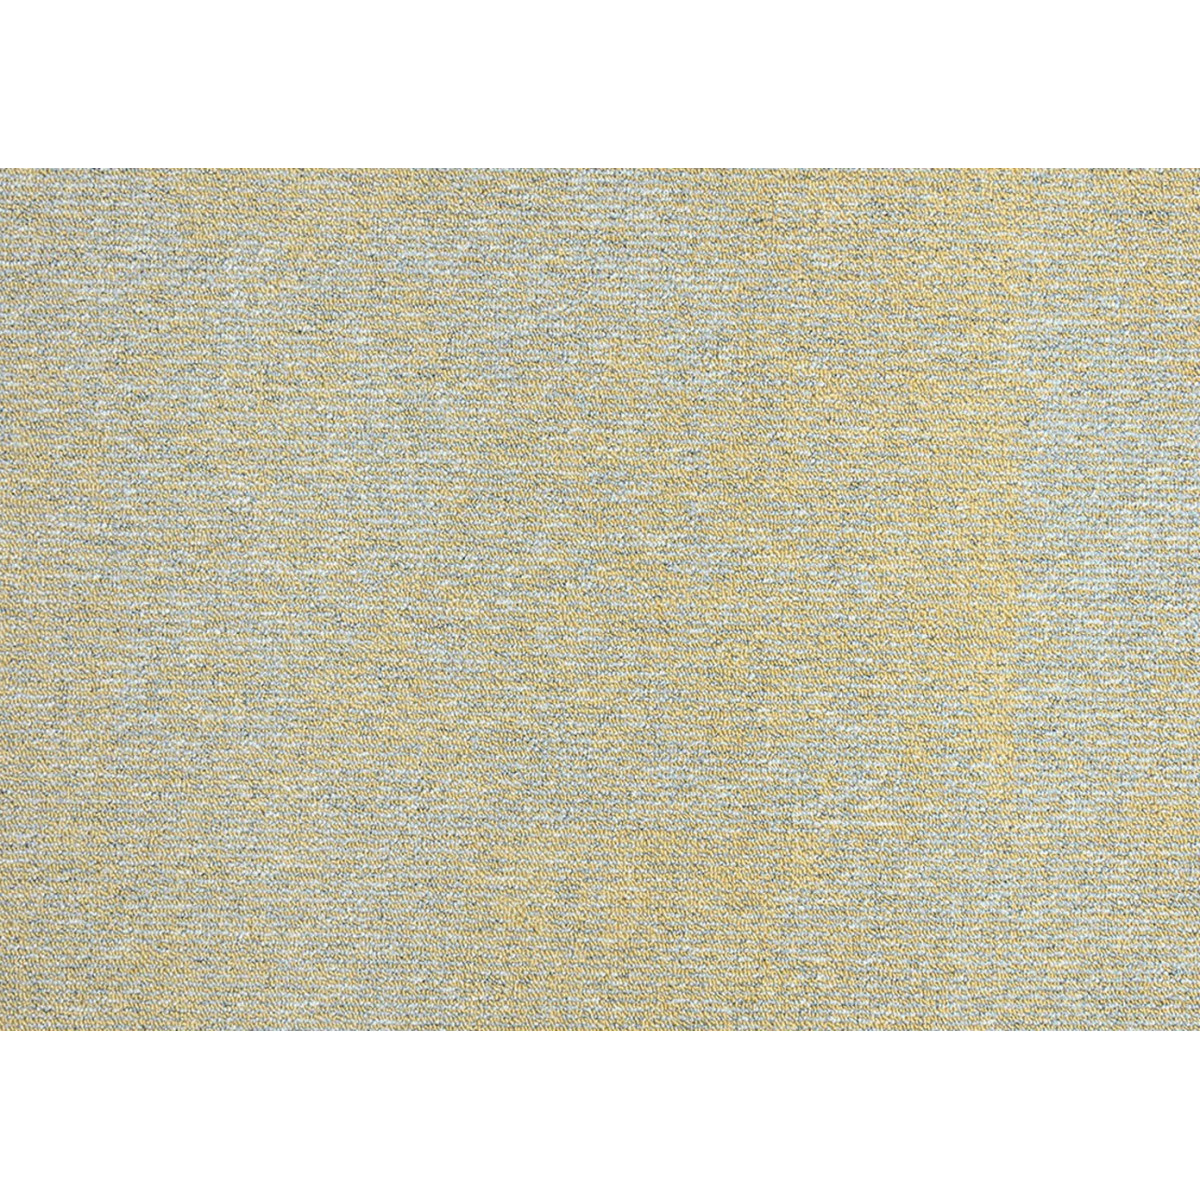 Metrážový koberec Serenity-bet 20 žlutý